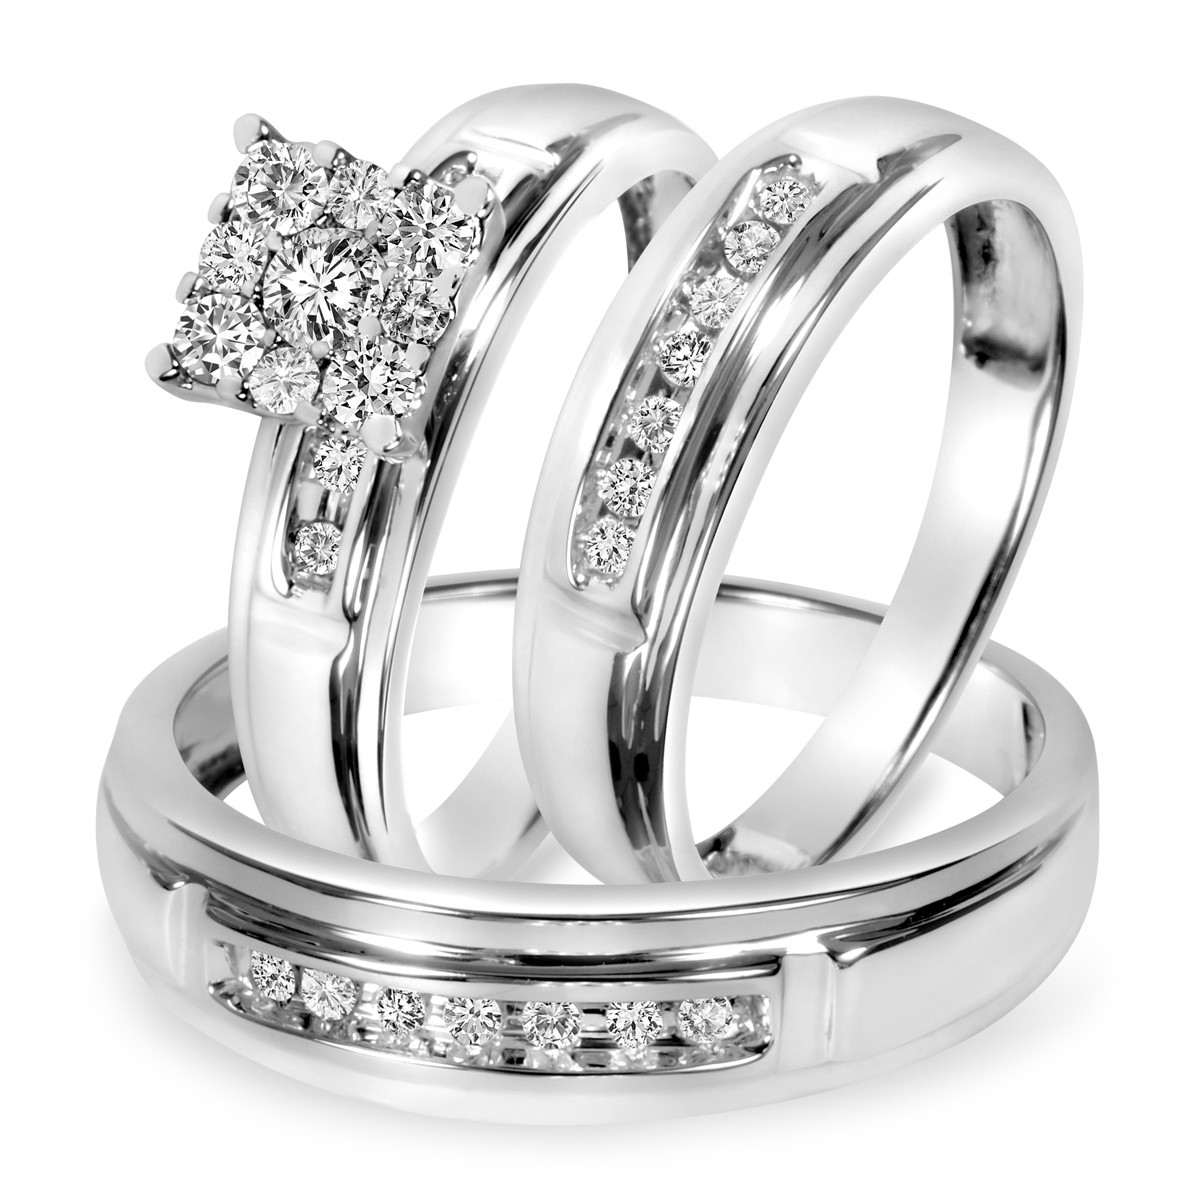 White Gold Wedding Ring Sets
 1 2 CT T W Diamond Trio Matching Wedding Ring Set 10K